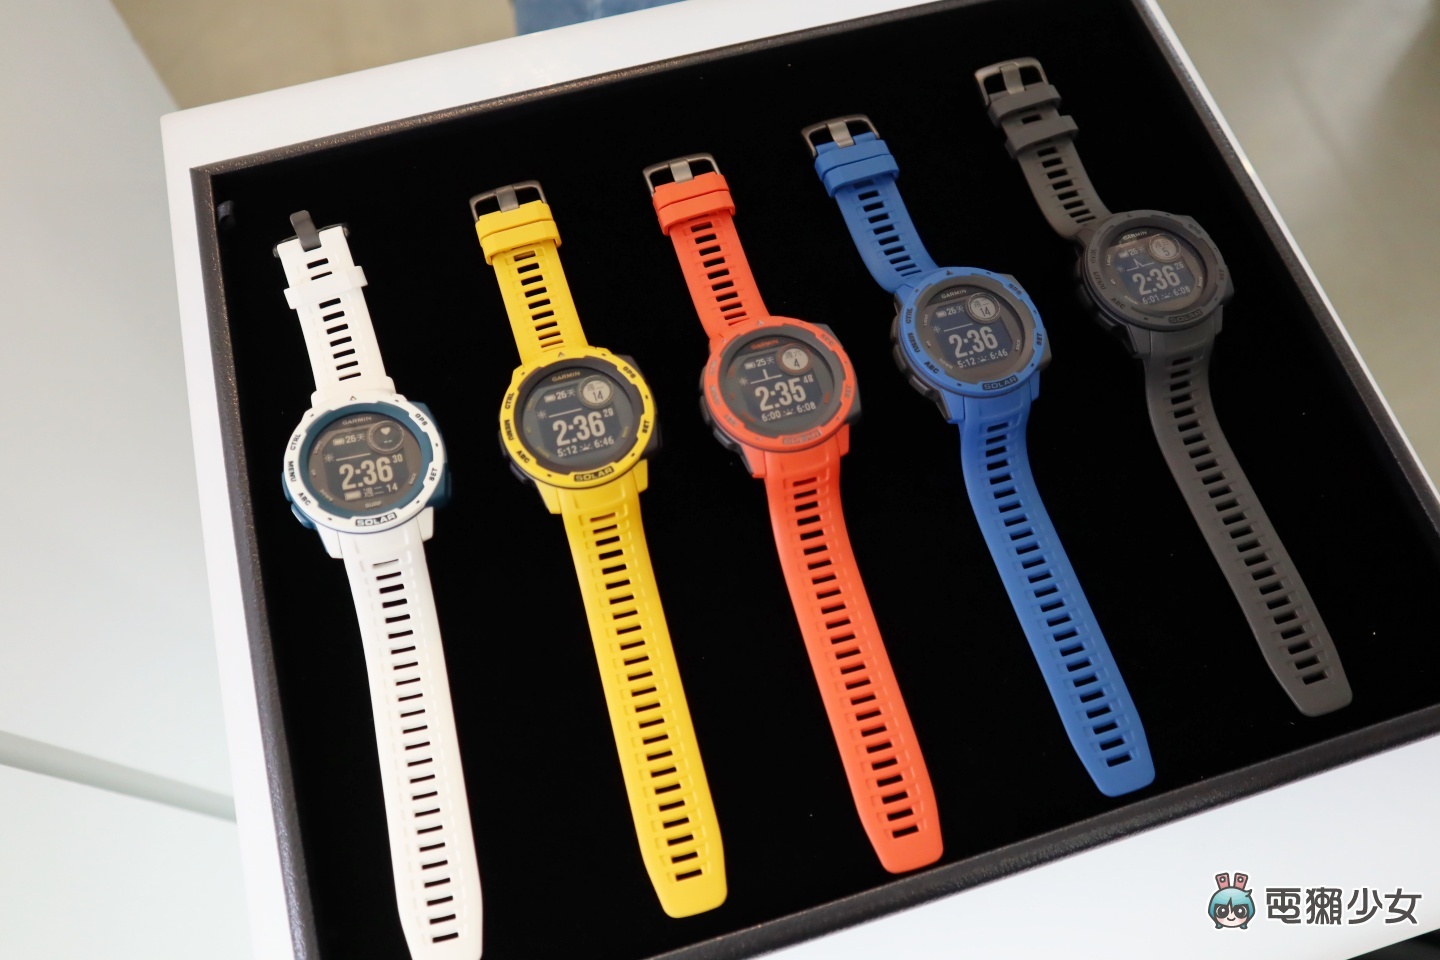 出門｜Garmin 推出三款太陽能智慧手錶，最高可靠太陽能達到完全無需充電！